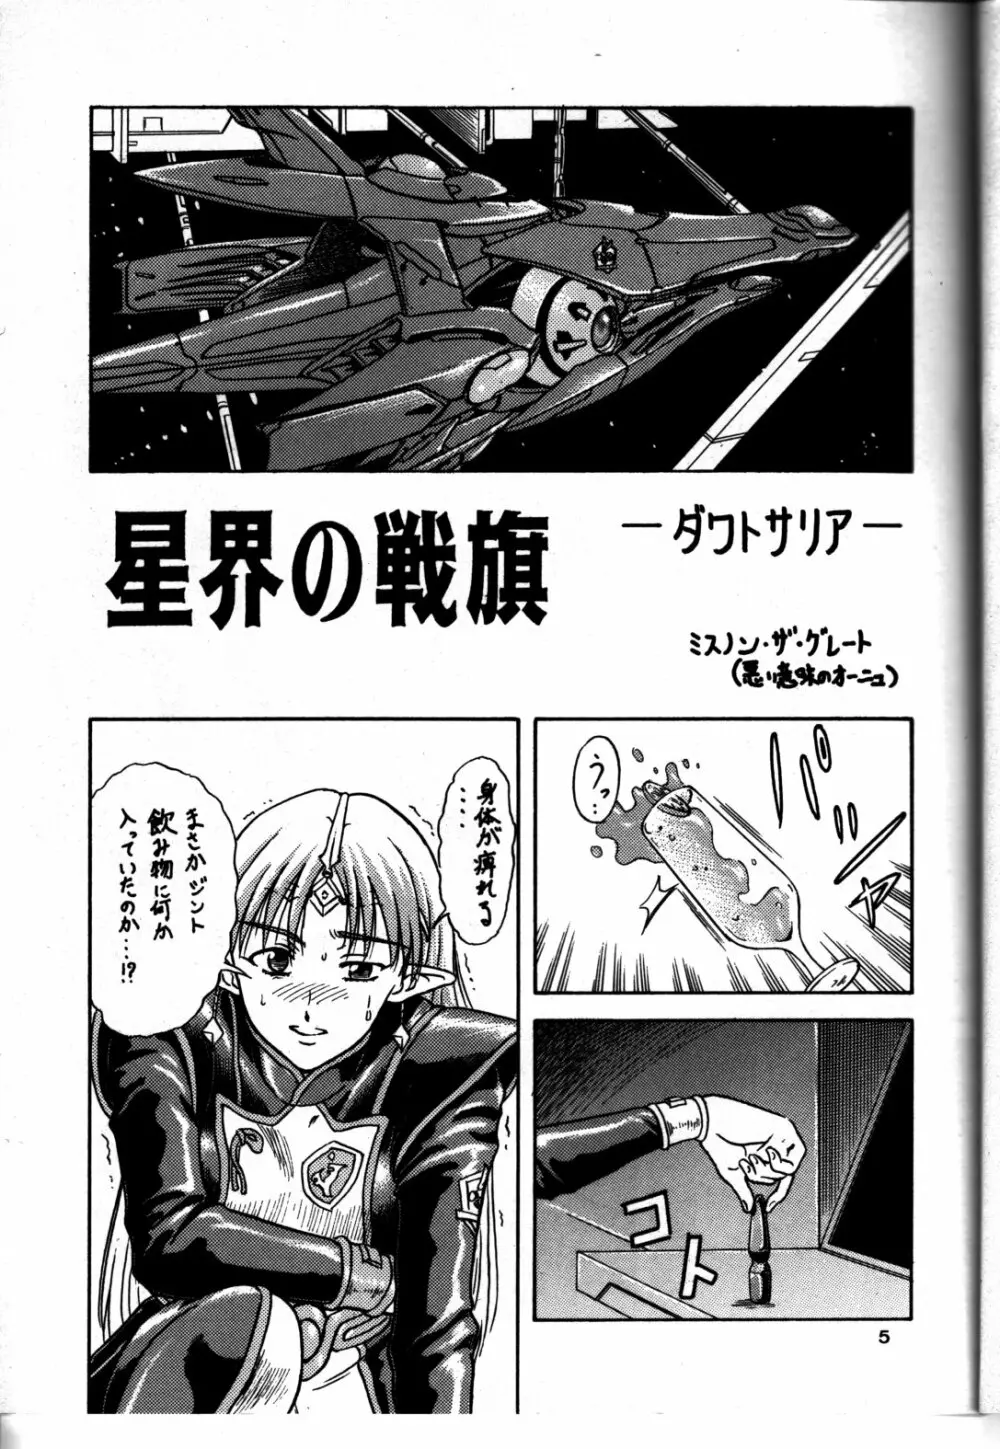 追放覚悟 Ver 4.0 - page5